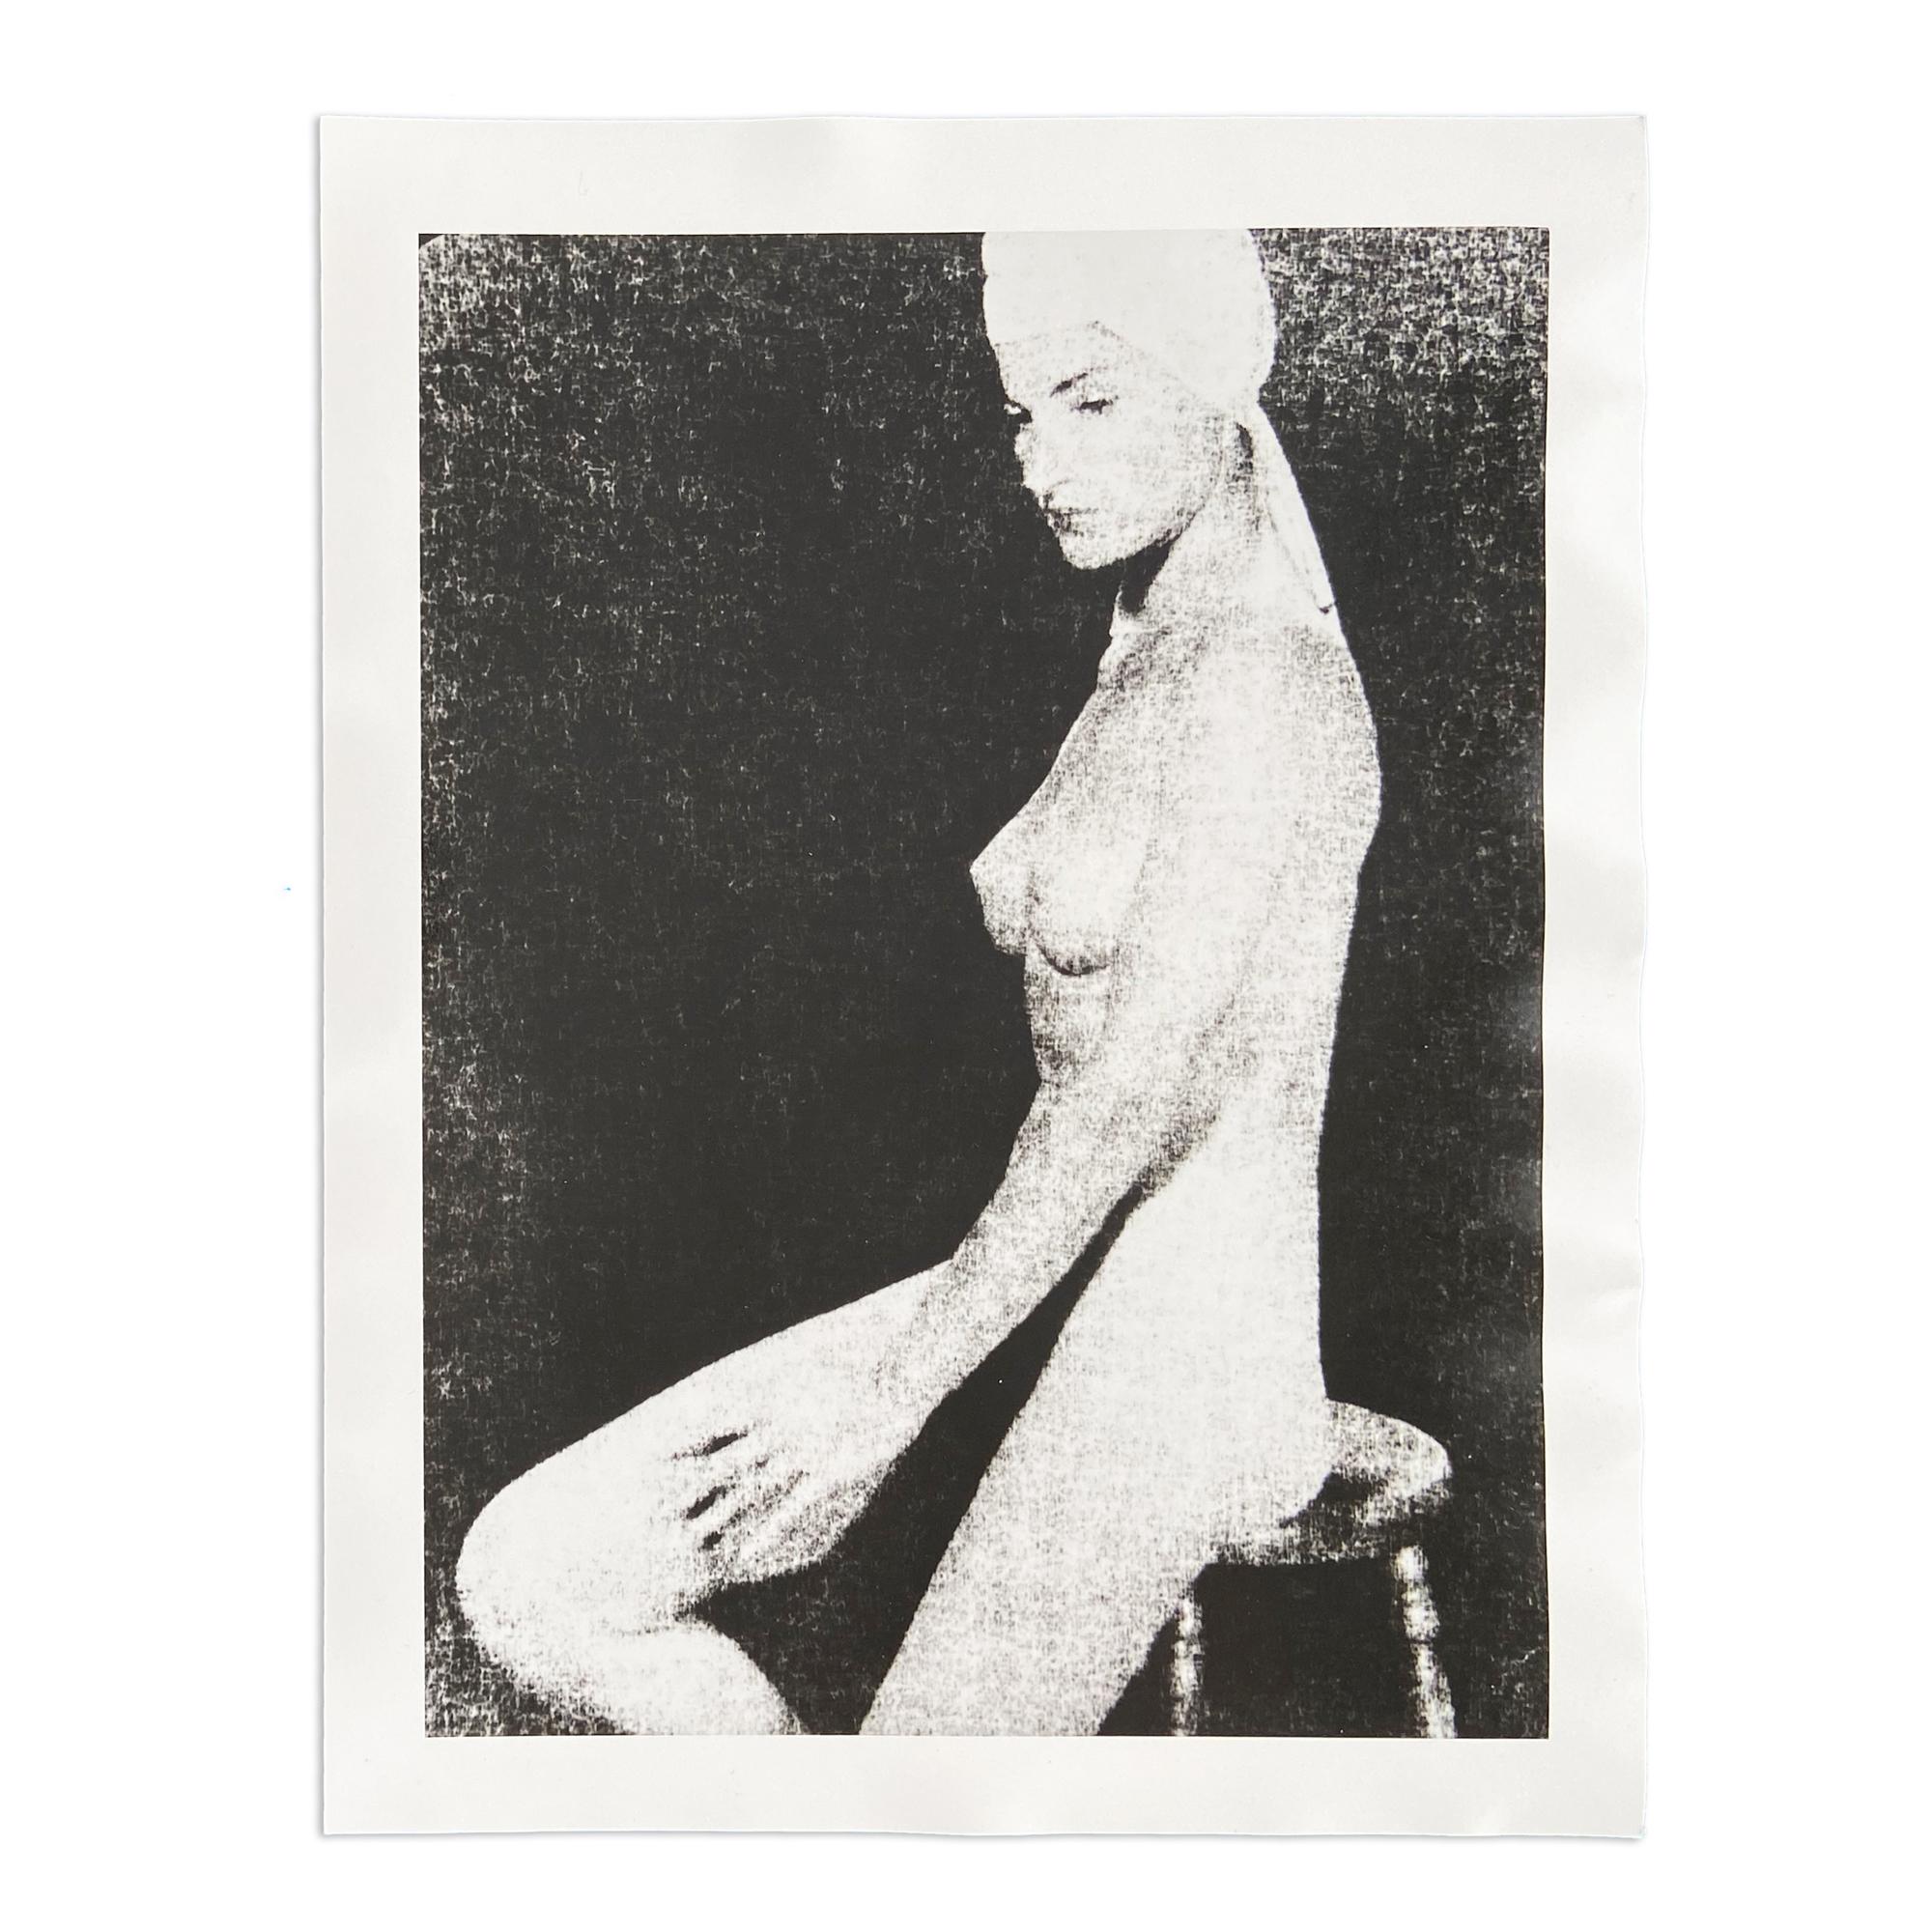 Man Ray (1890-1976)
Juliet, 1945/1991
Medium: Silbergelatineabzug (posthumer Abzug)
Abmessungen: 30,5 x 24 cm
Gestempelt: "Copie d'une épreuve originale - ADAGP Man Ray Trust".
Zustand: Sehr gut

Dieses Foto von Man Ray wurde 1945 aufgenommen und